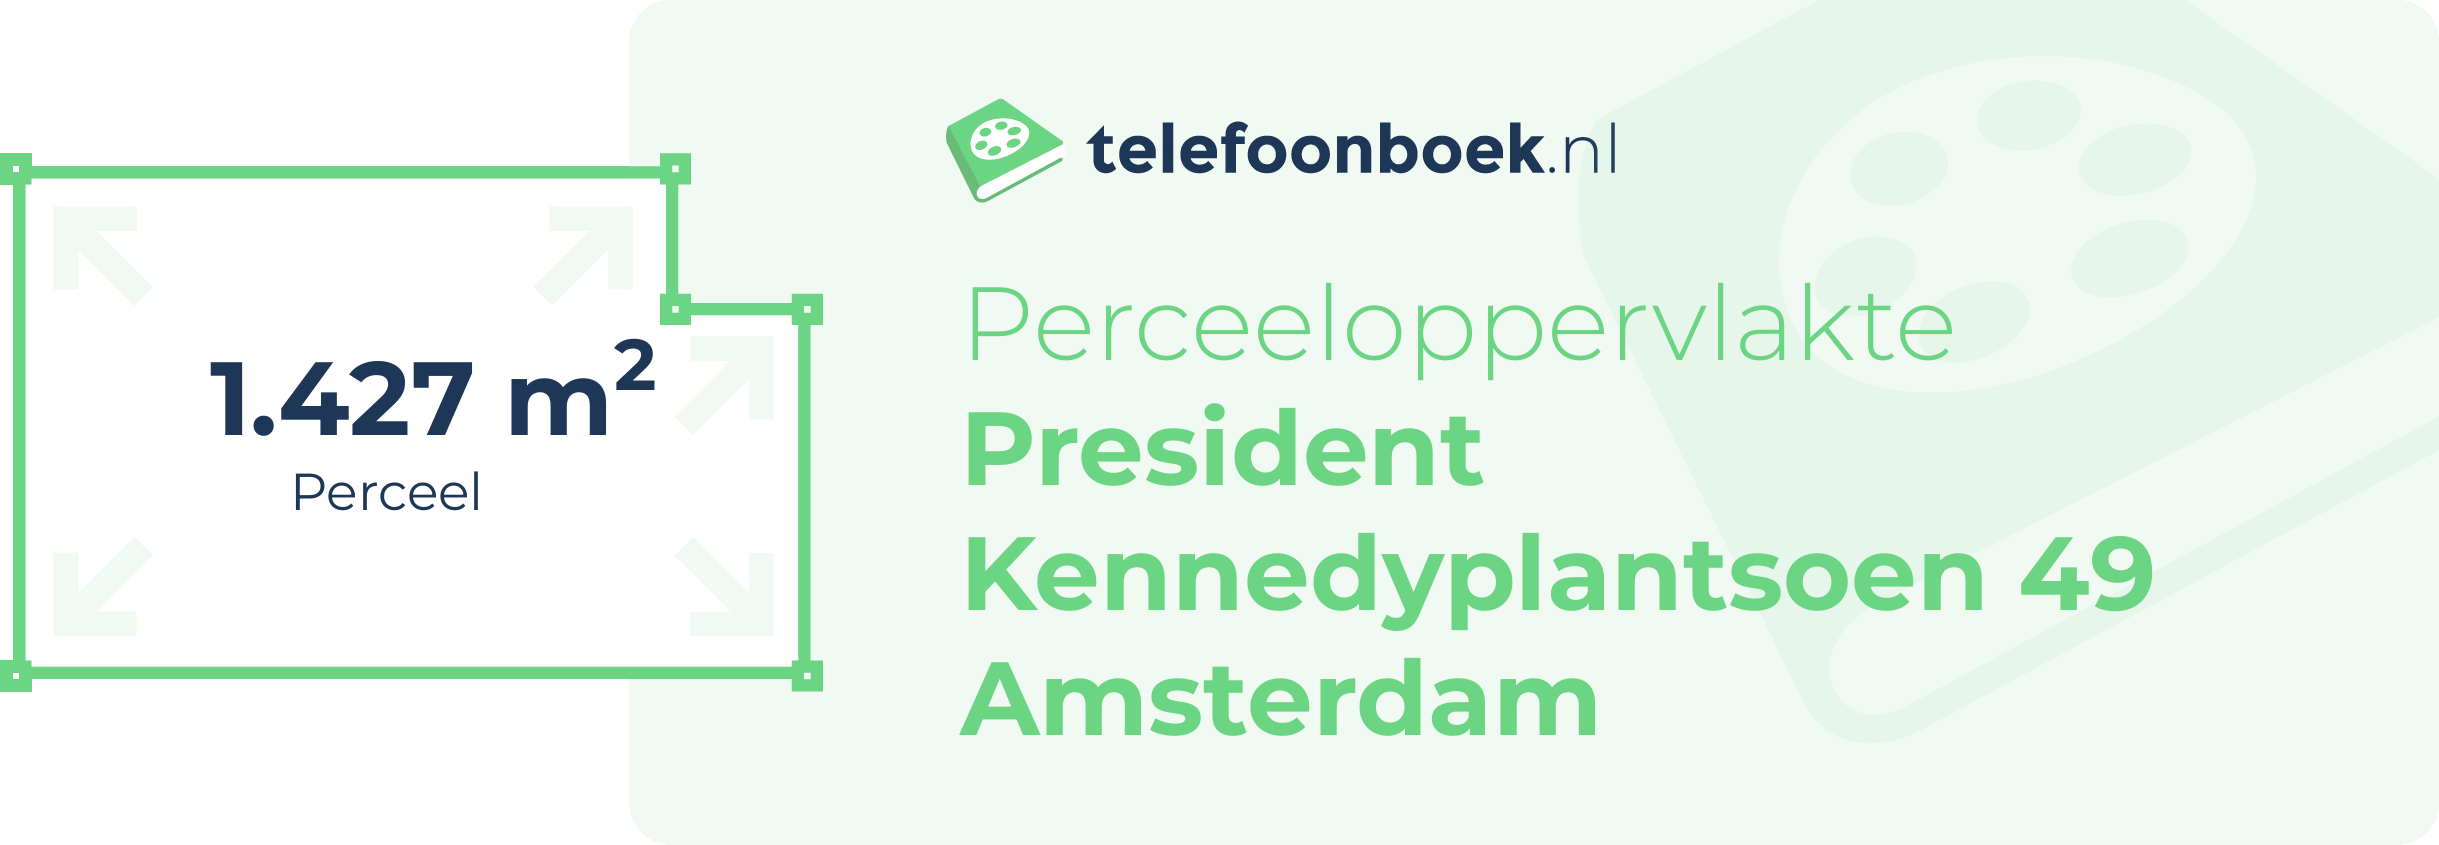 Perceeloppervlakte President Kennedyplantsoen 49 Amsterdam